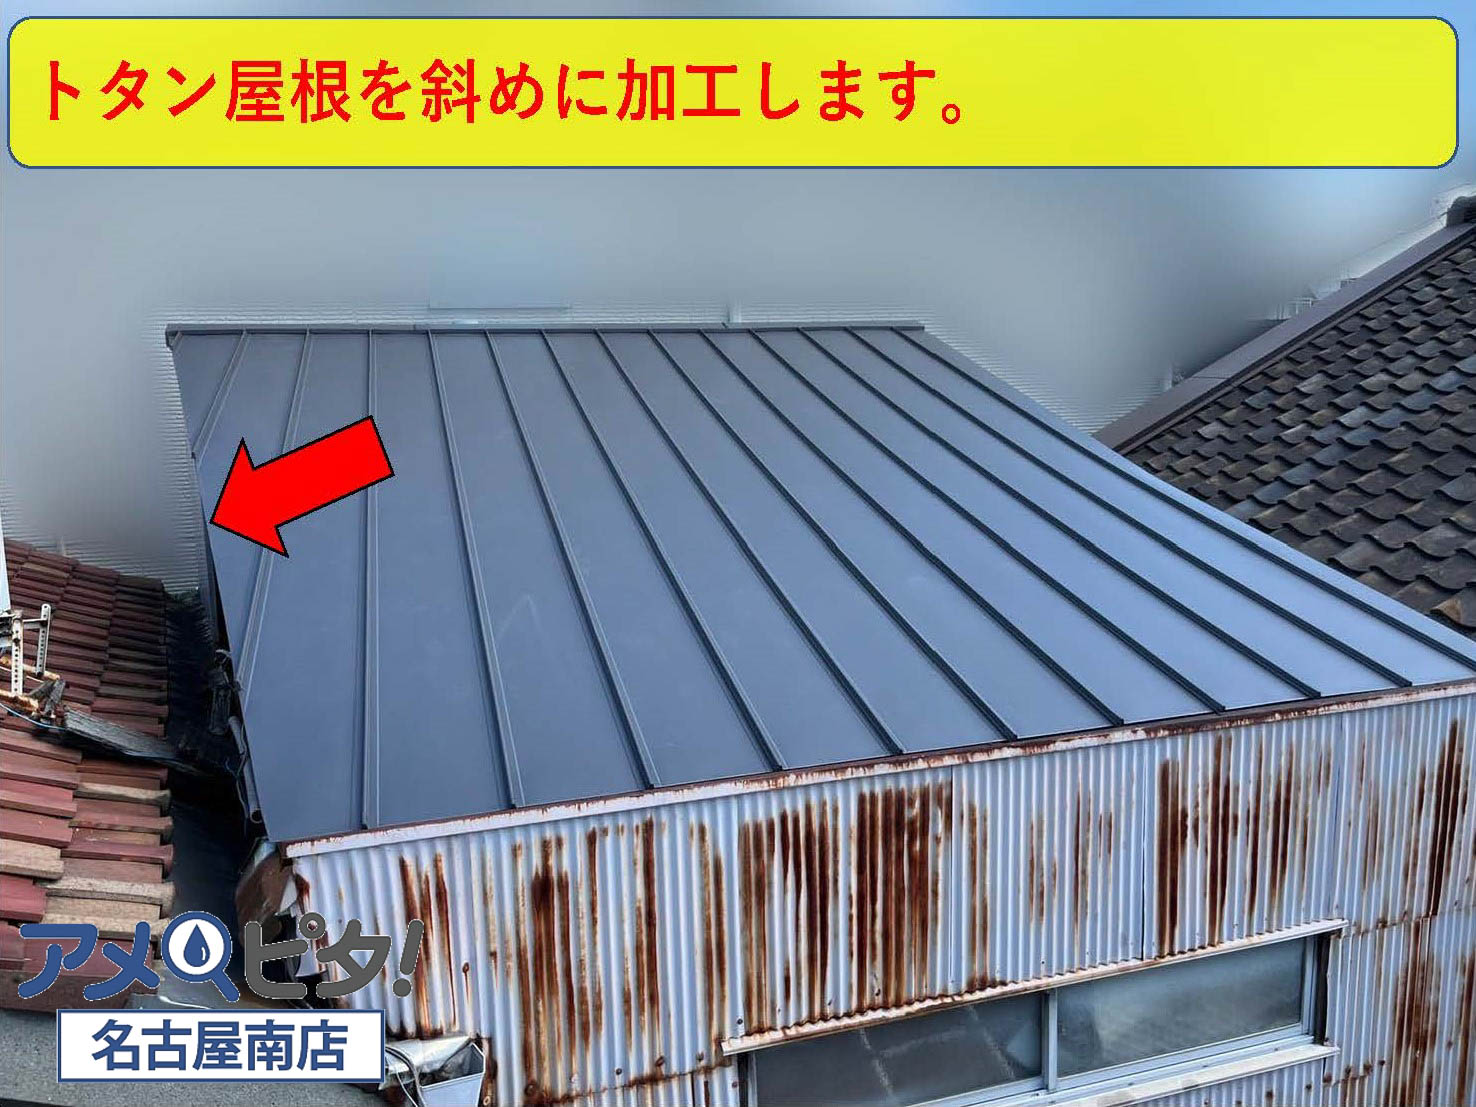 トタン屋根を斜めに加工しながら屋根全体に施工していきます